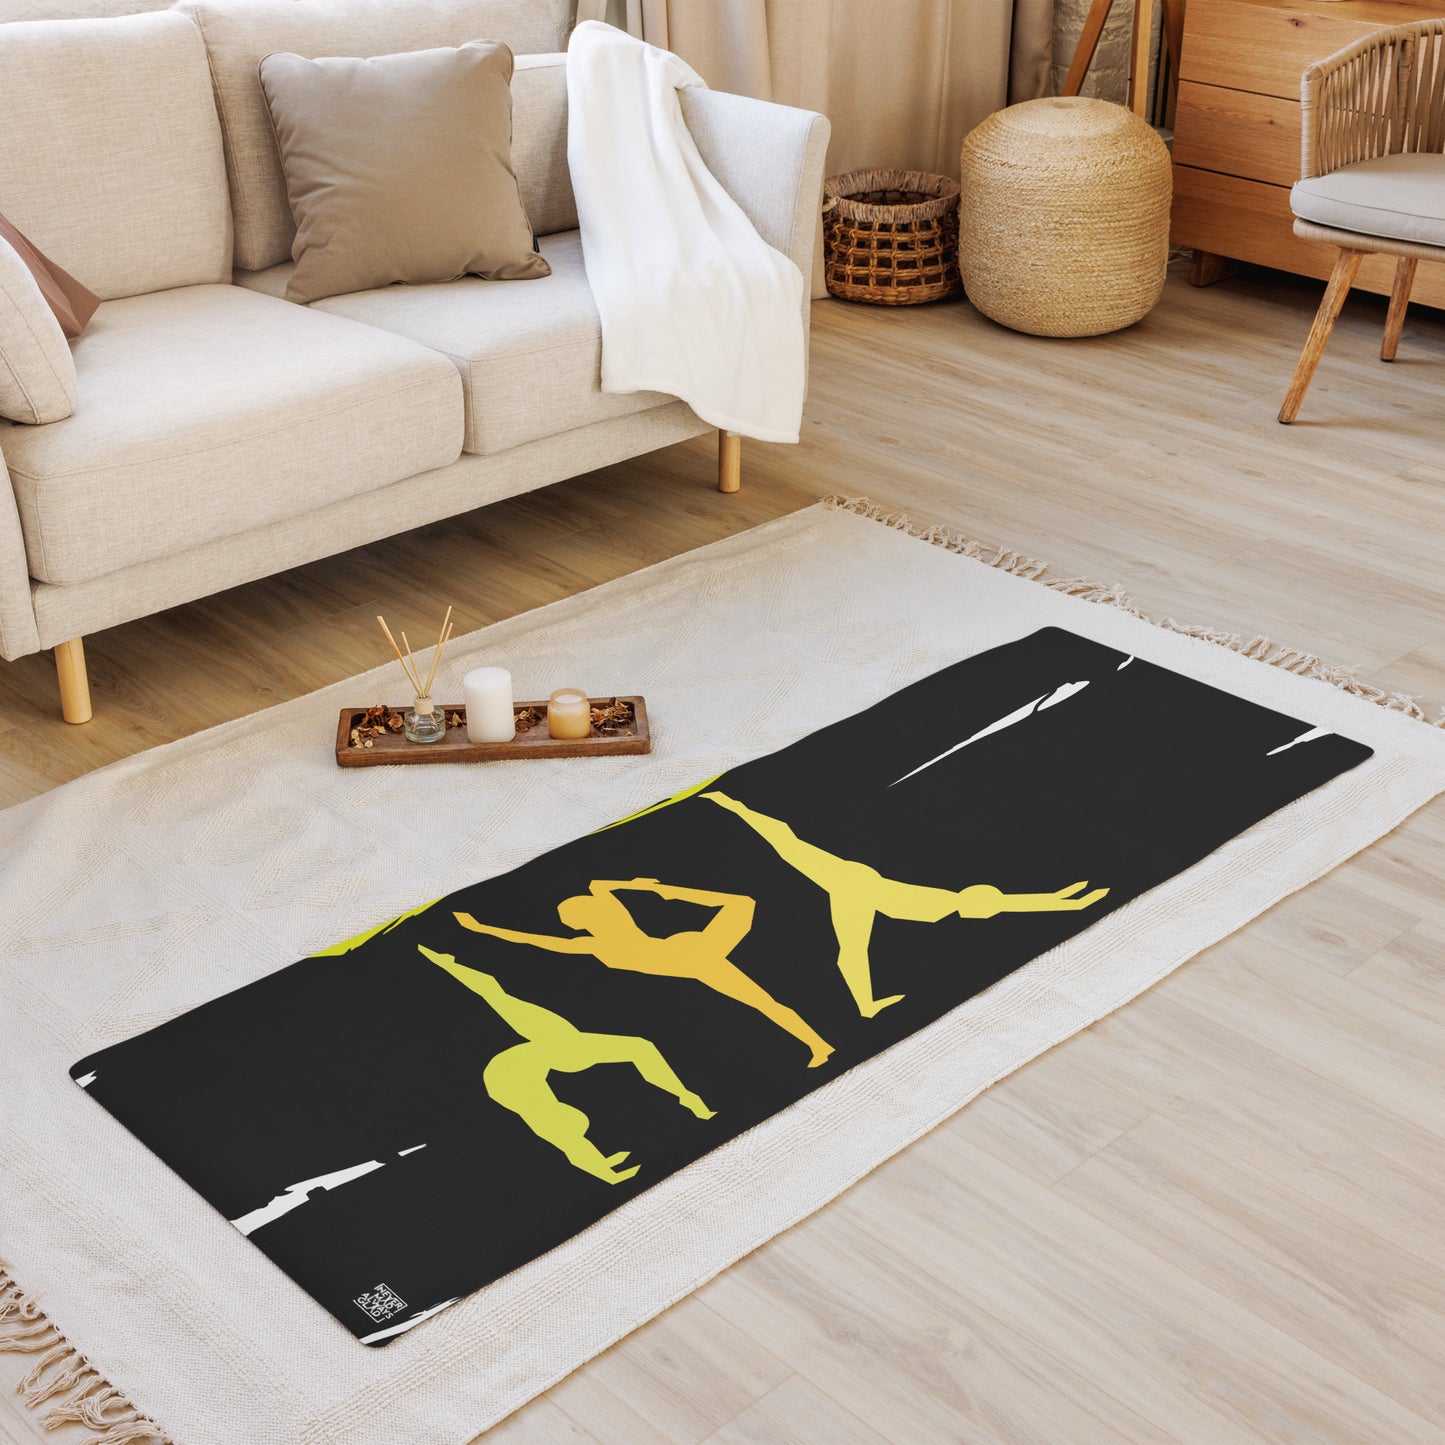 Yoga 3 Yoga mat